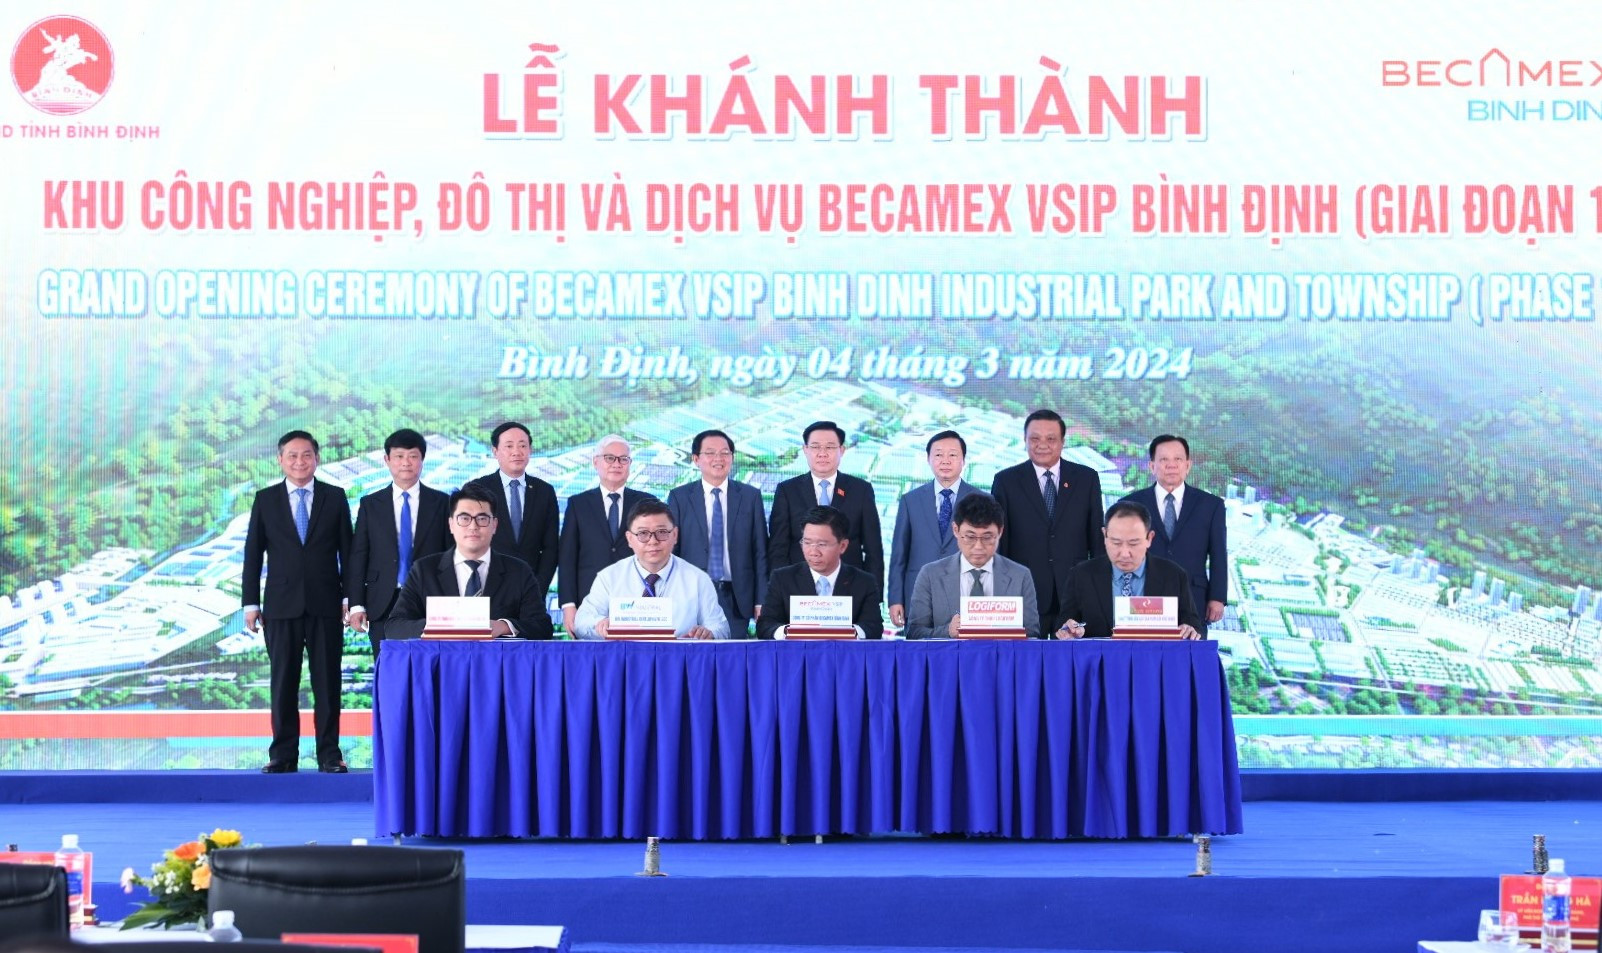 Chủ tịch Quốc hội Vương Đình Huệ dự lễ khánh thành Khu công nghiệp, đô thị và dịch vụ Becamex VSIP Bình Định -0